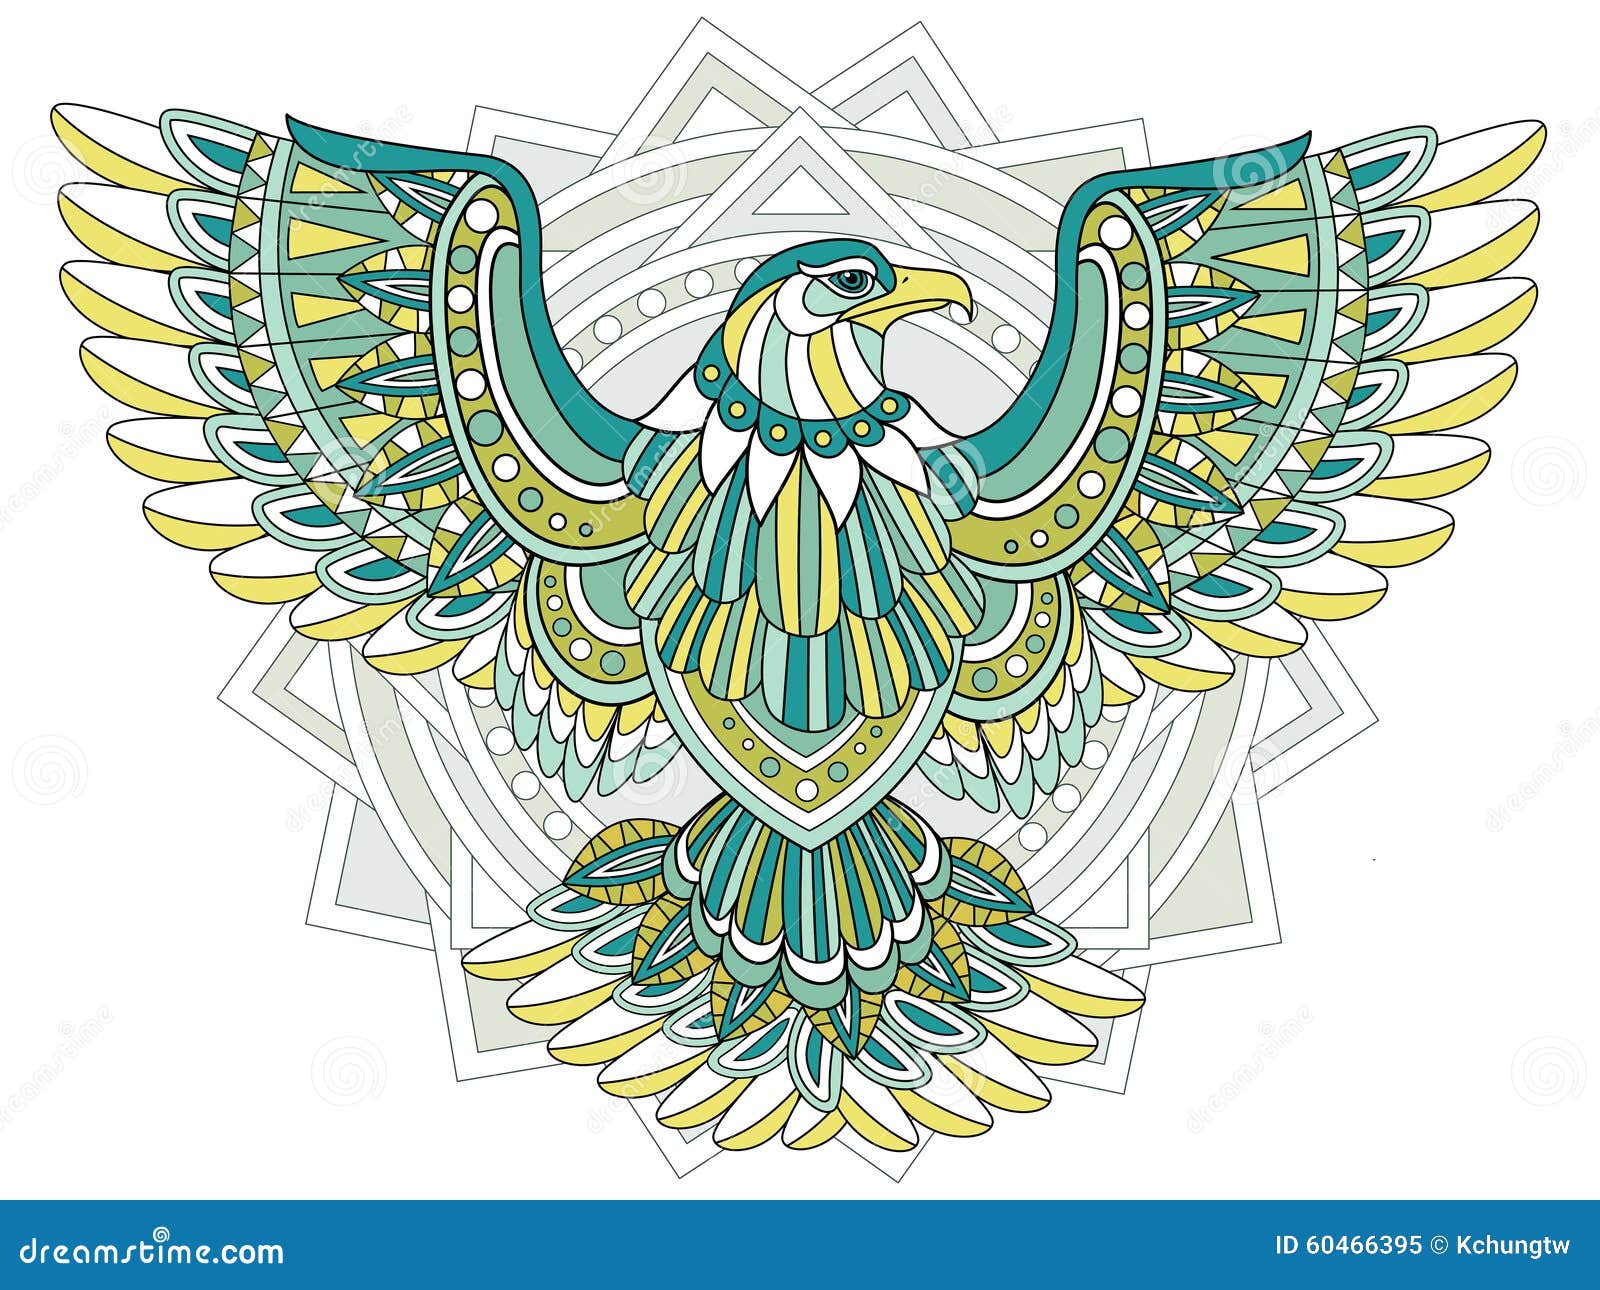 Eagle coloring illustrations vectors